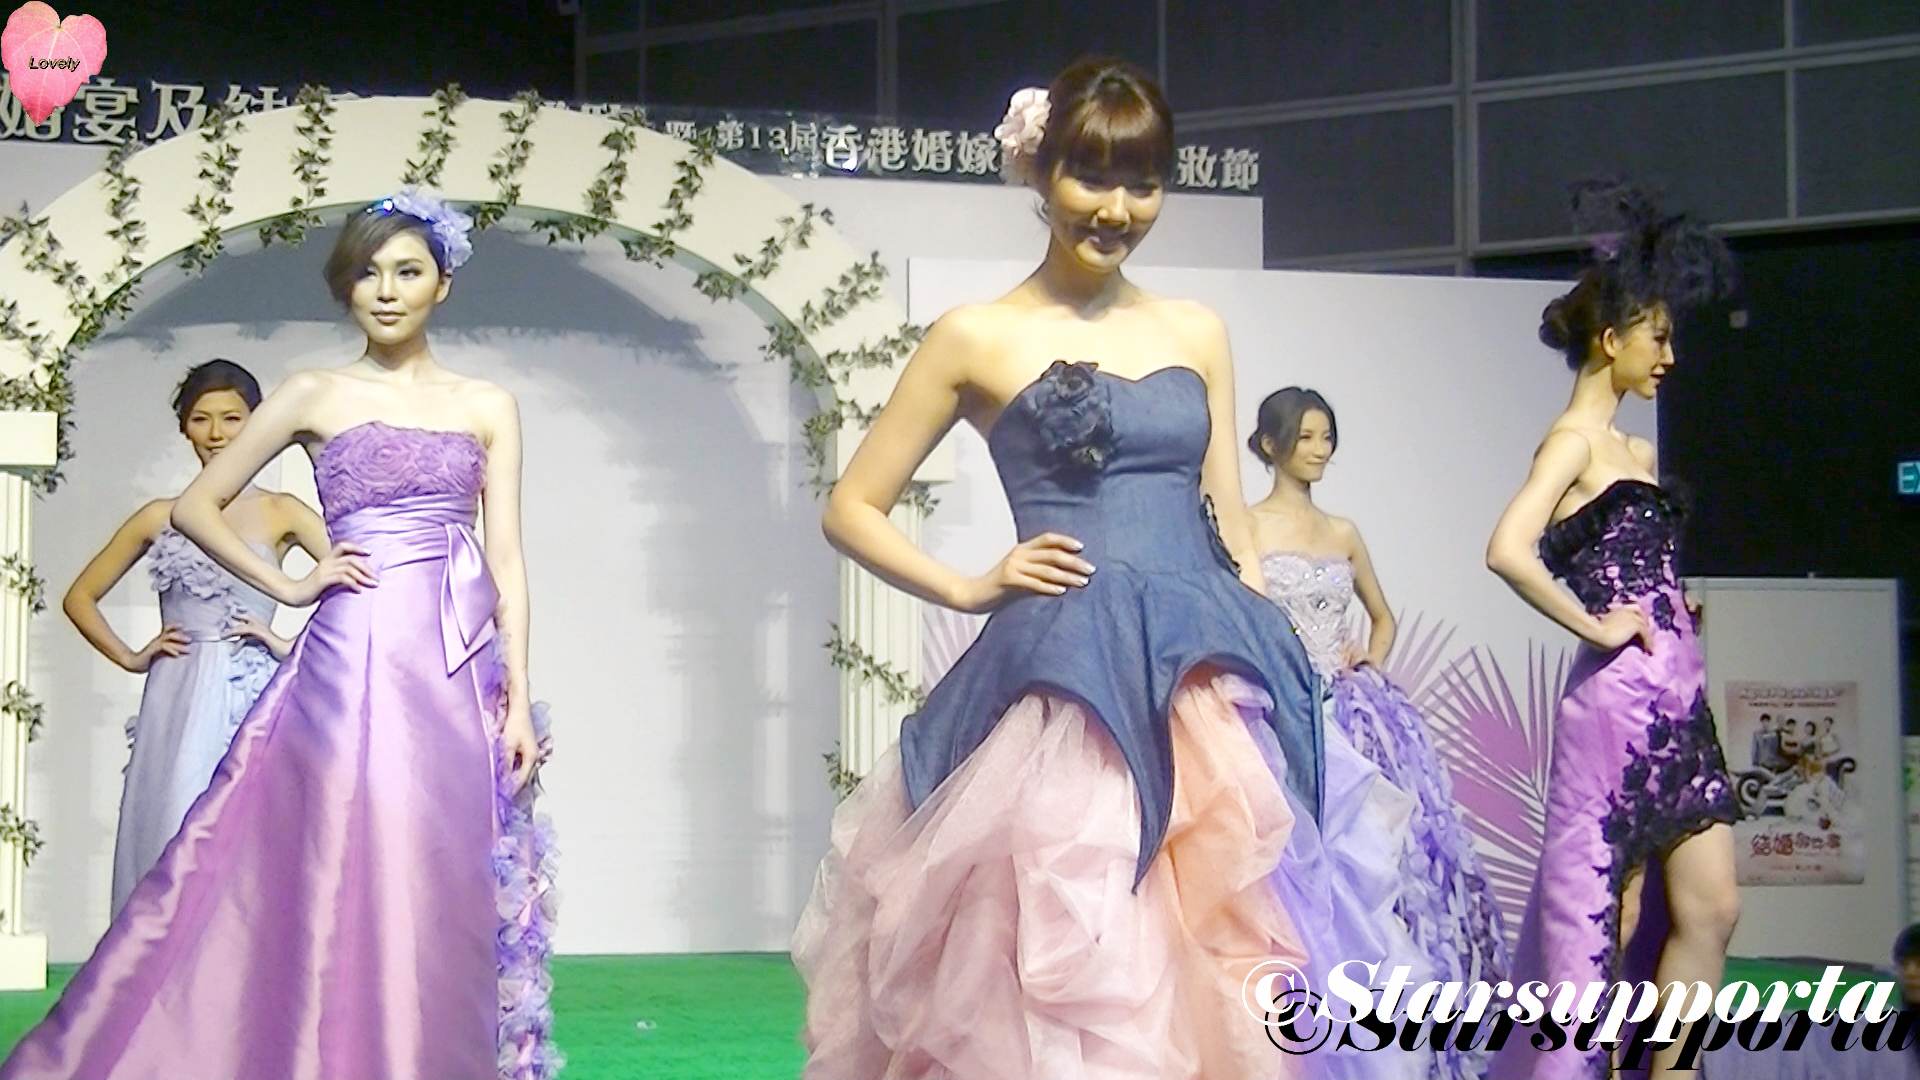 20120610 夏日婚紗、婚宴及結婚服務博覽 - Kir Royal: Rainbow @ 香港會議展覽中心 HKCEC (video)